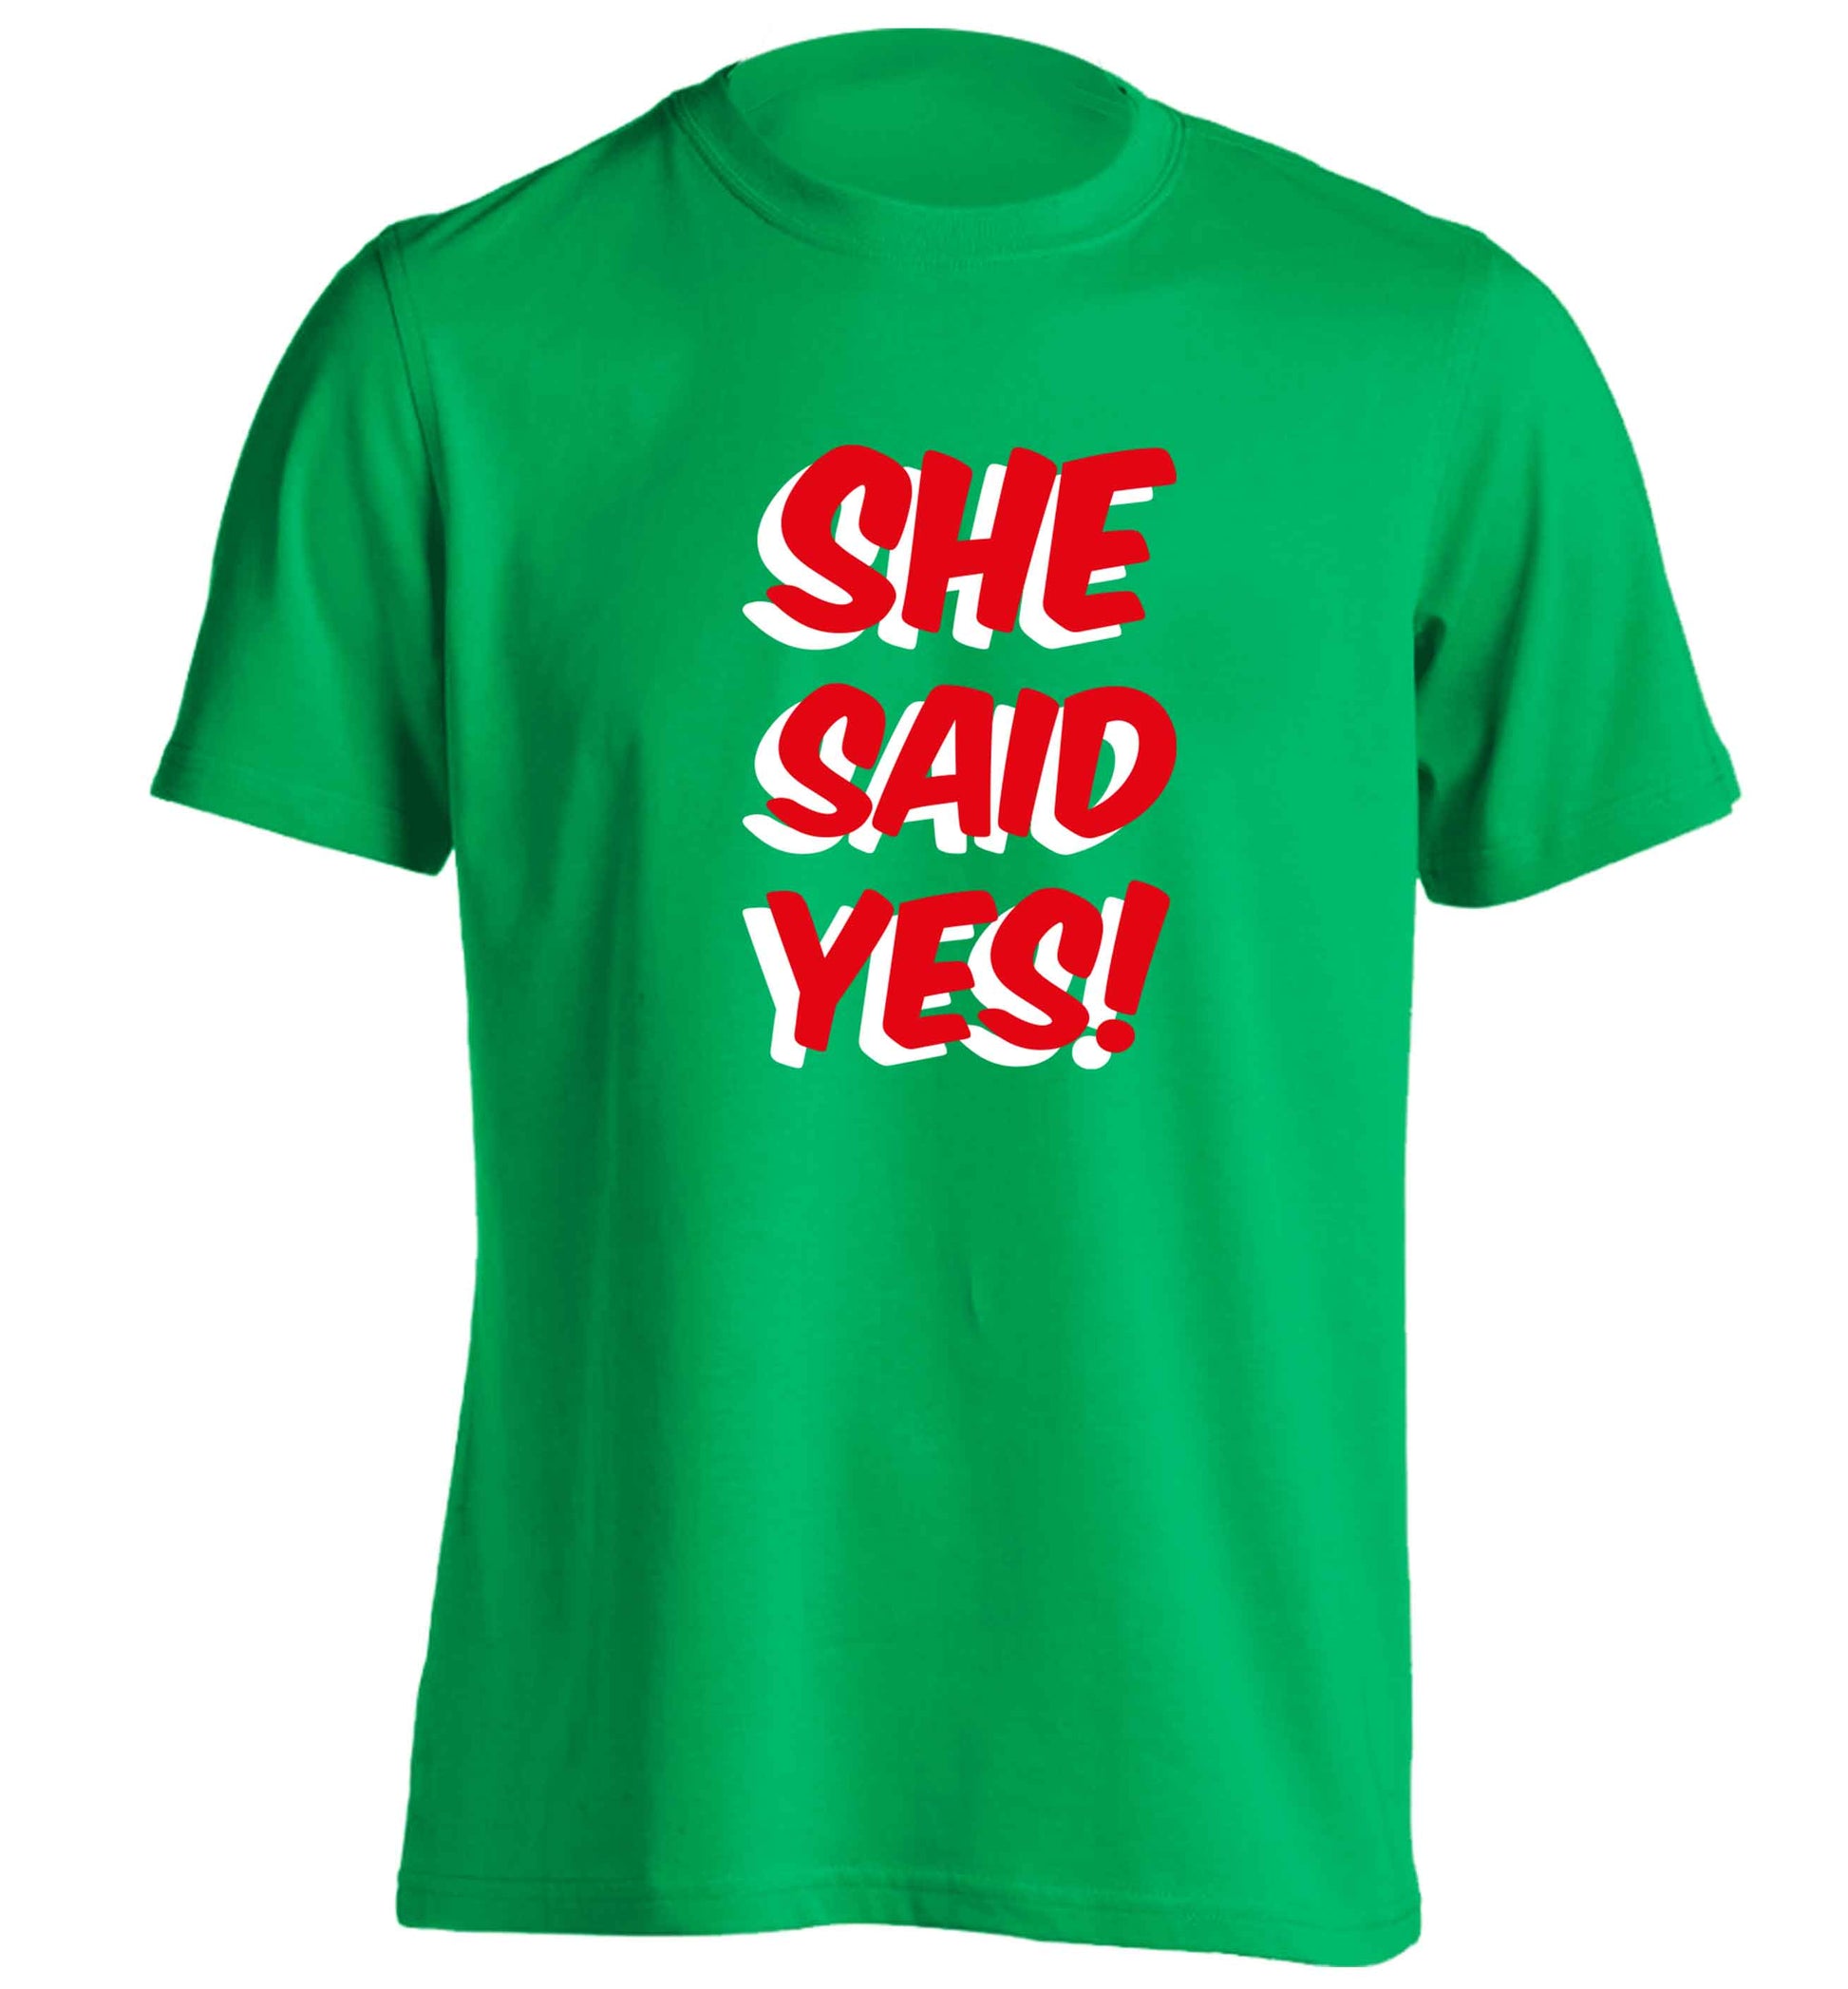 She said yes adults unisex green Tshirt 2XL